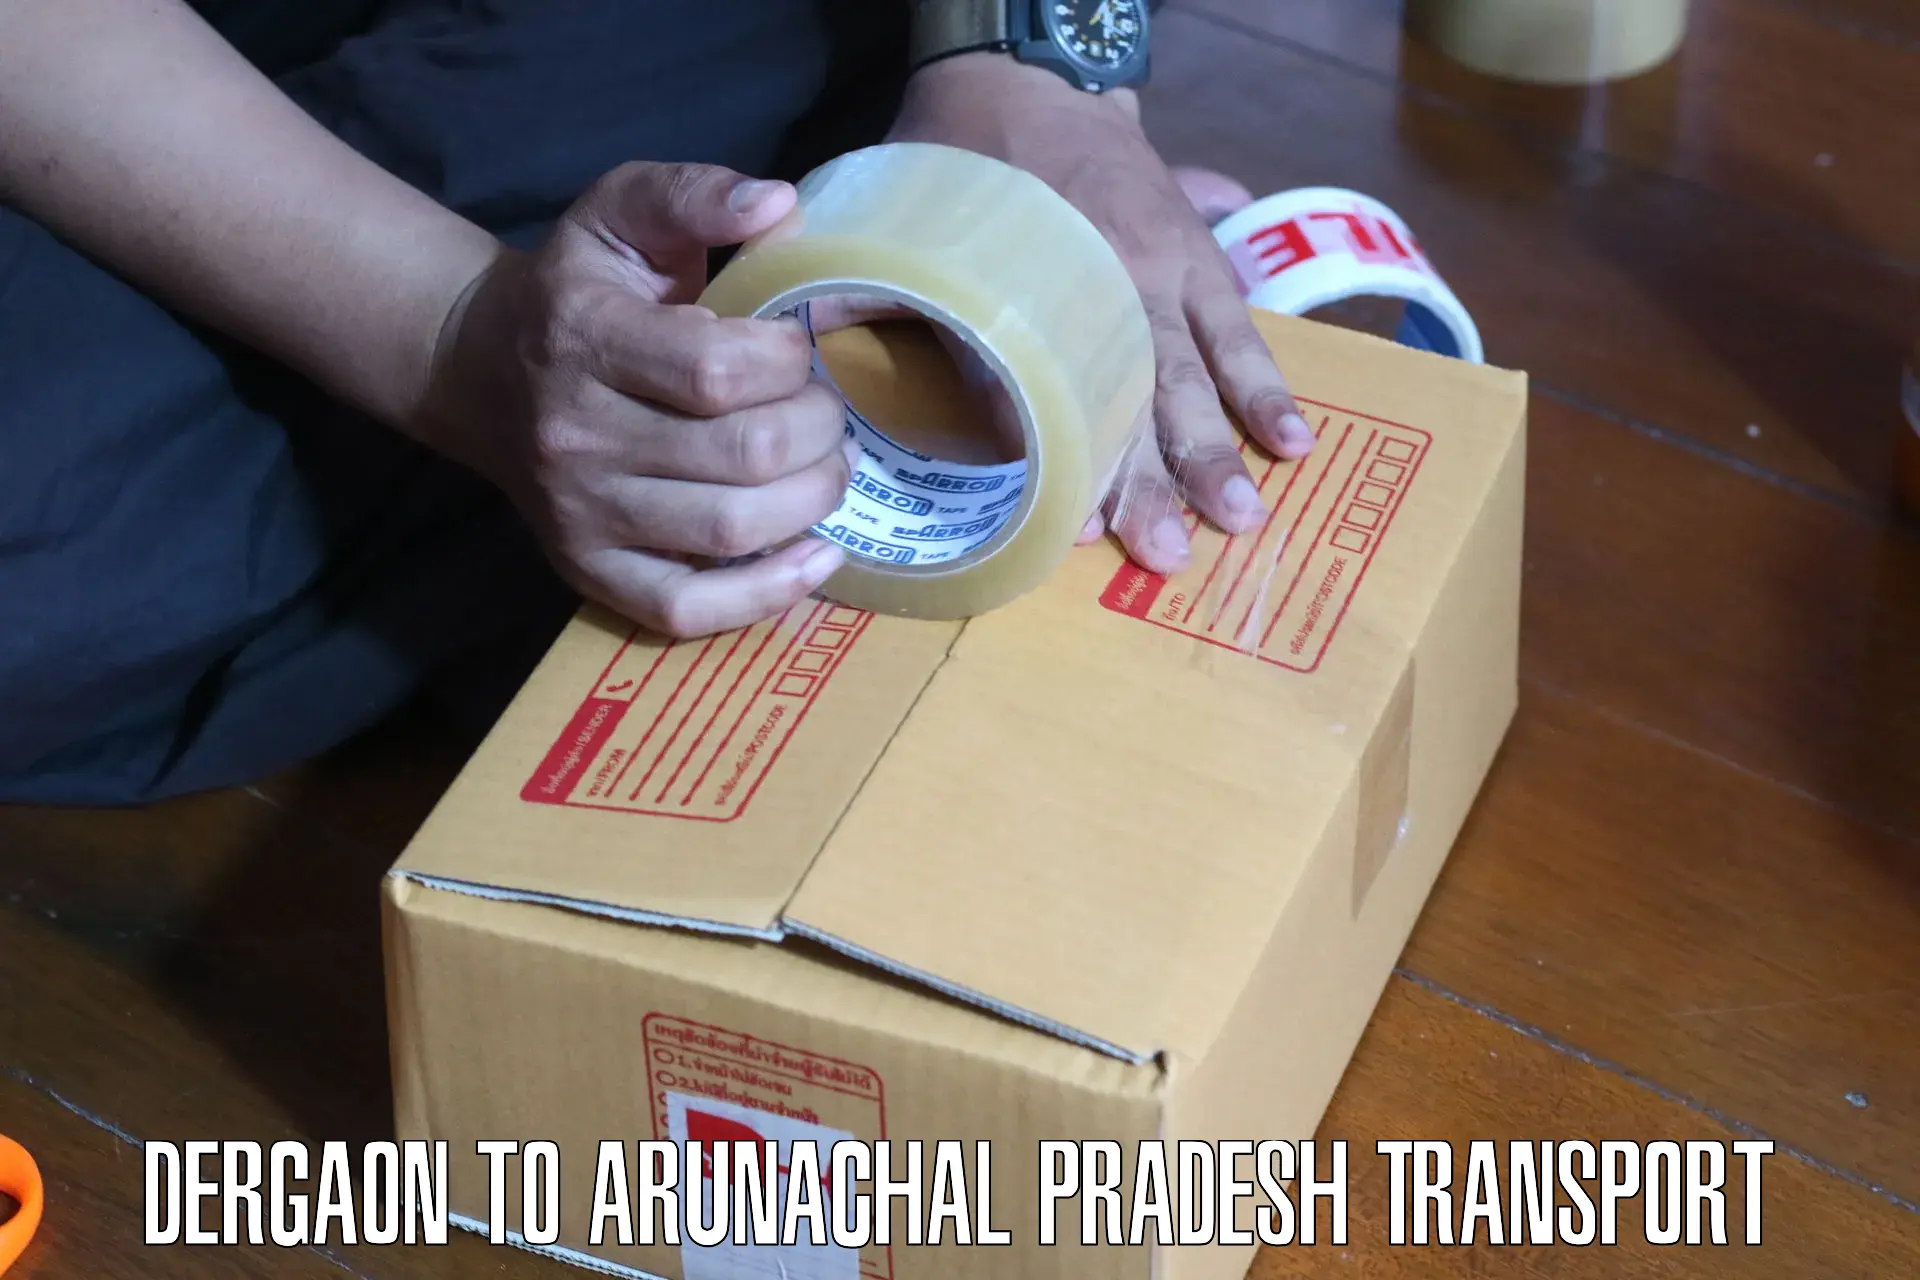 Furniture transport service Dergaon to Arunachal Pradesh